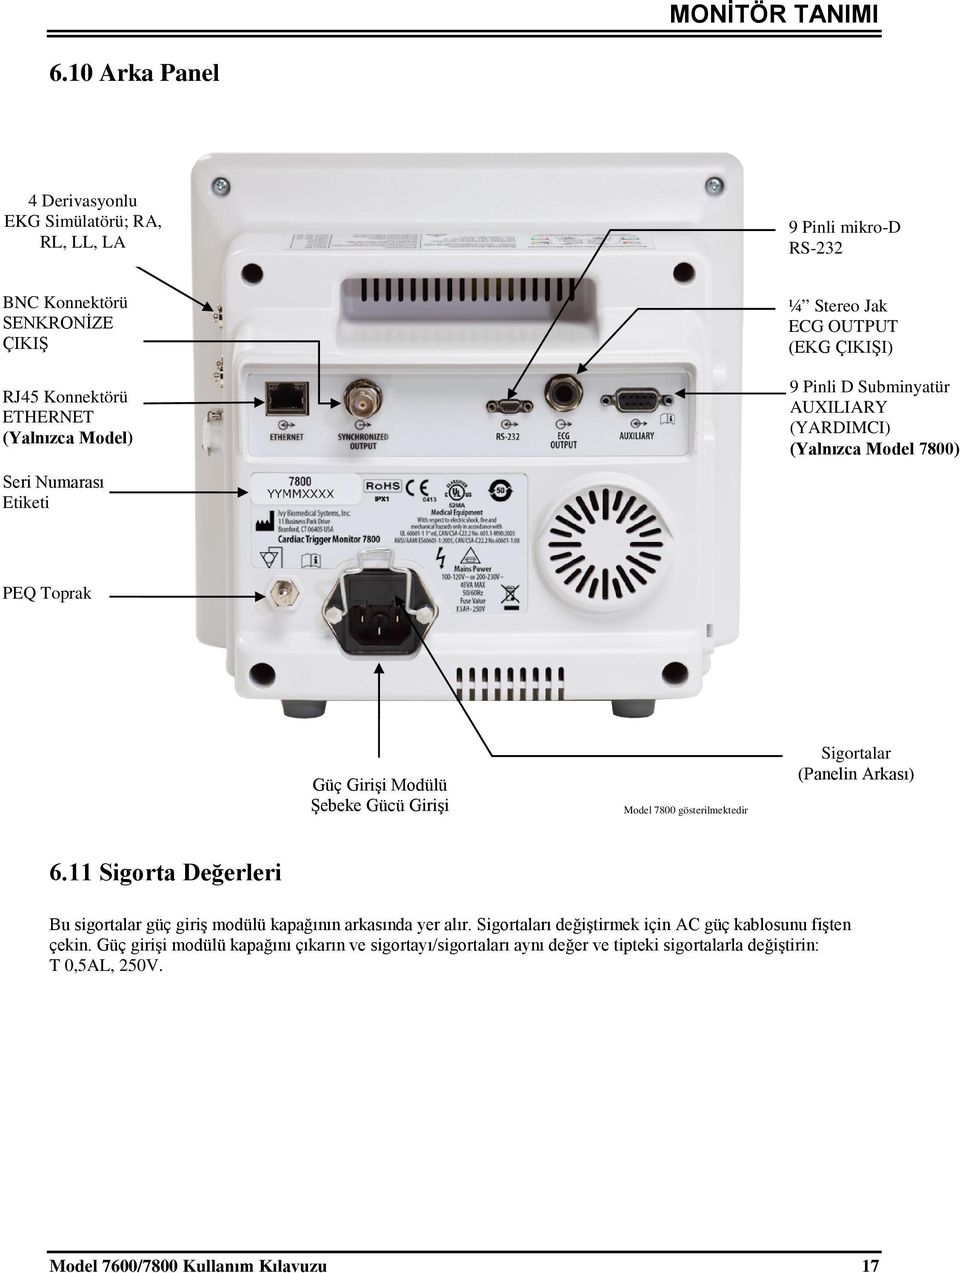 Etiketi ¼ Stereo Jak ECG OUTPUT (EKG ÇIKIŞI) 9 Pinli D Subminyatür AUXILIARY (YARDIMCI) (Yalnızca Model 7800) PEQ Toprak Güç Girişi Modülü Şebeke Gücü Girişi Model 7800